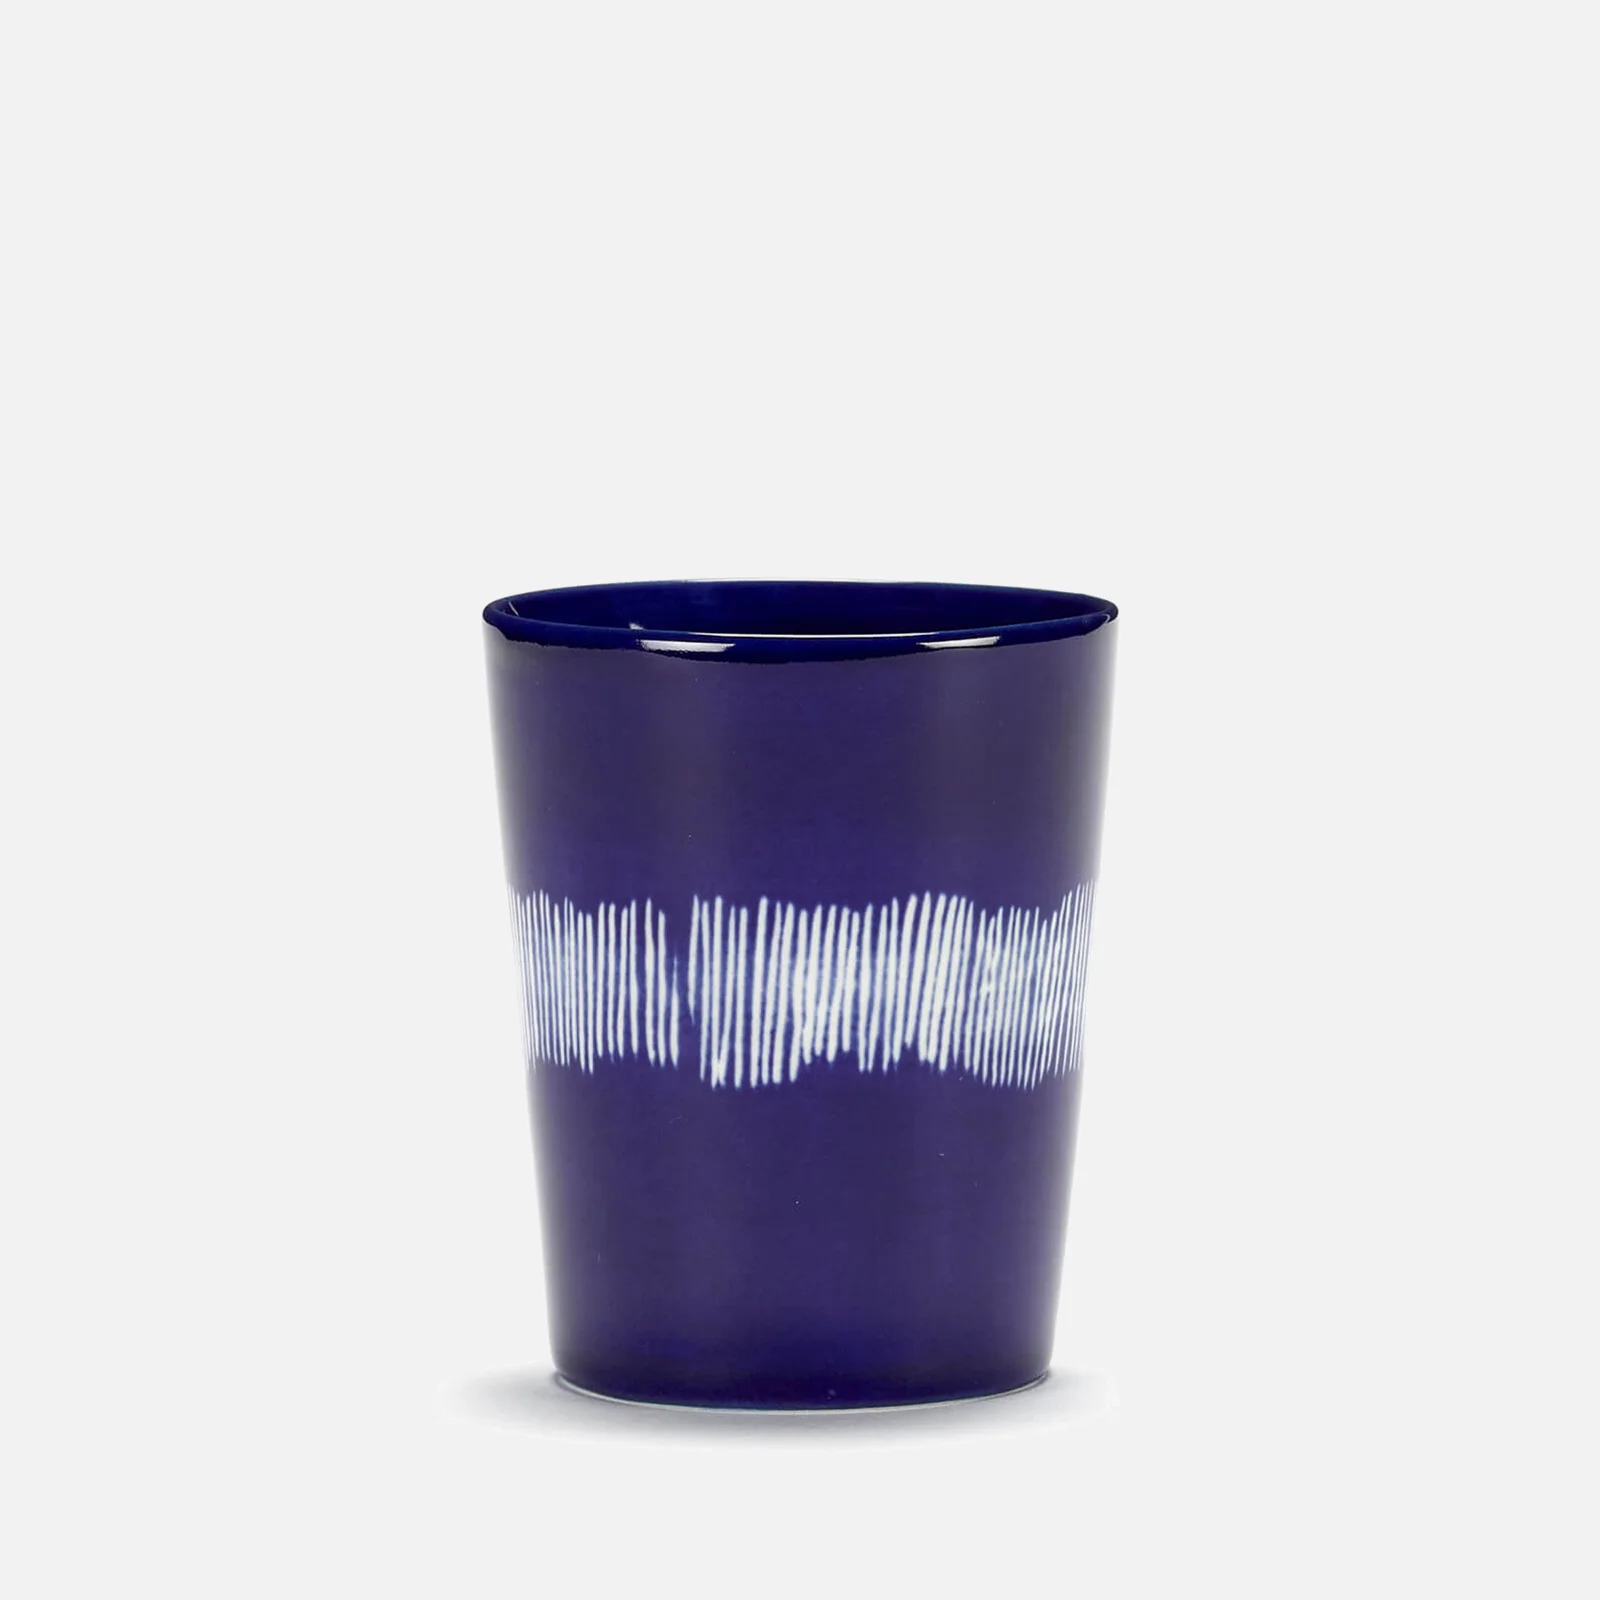 Serax x Ottolenghi Mug - Lapis Lazuli & Swirl White (Set of 4) Image 1